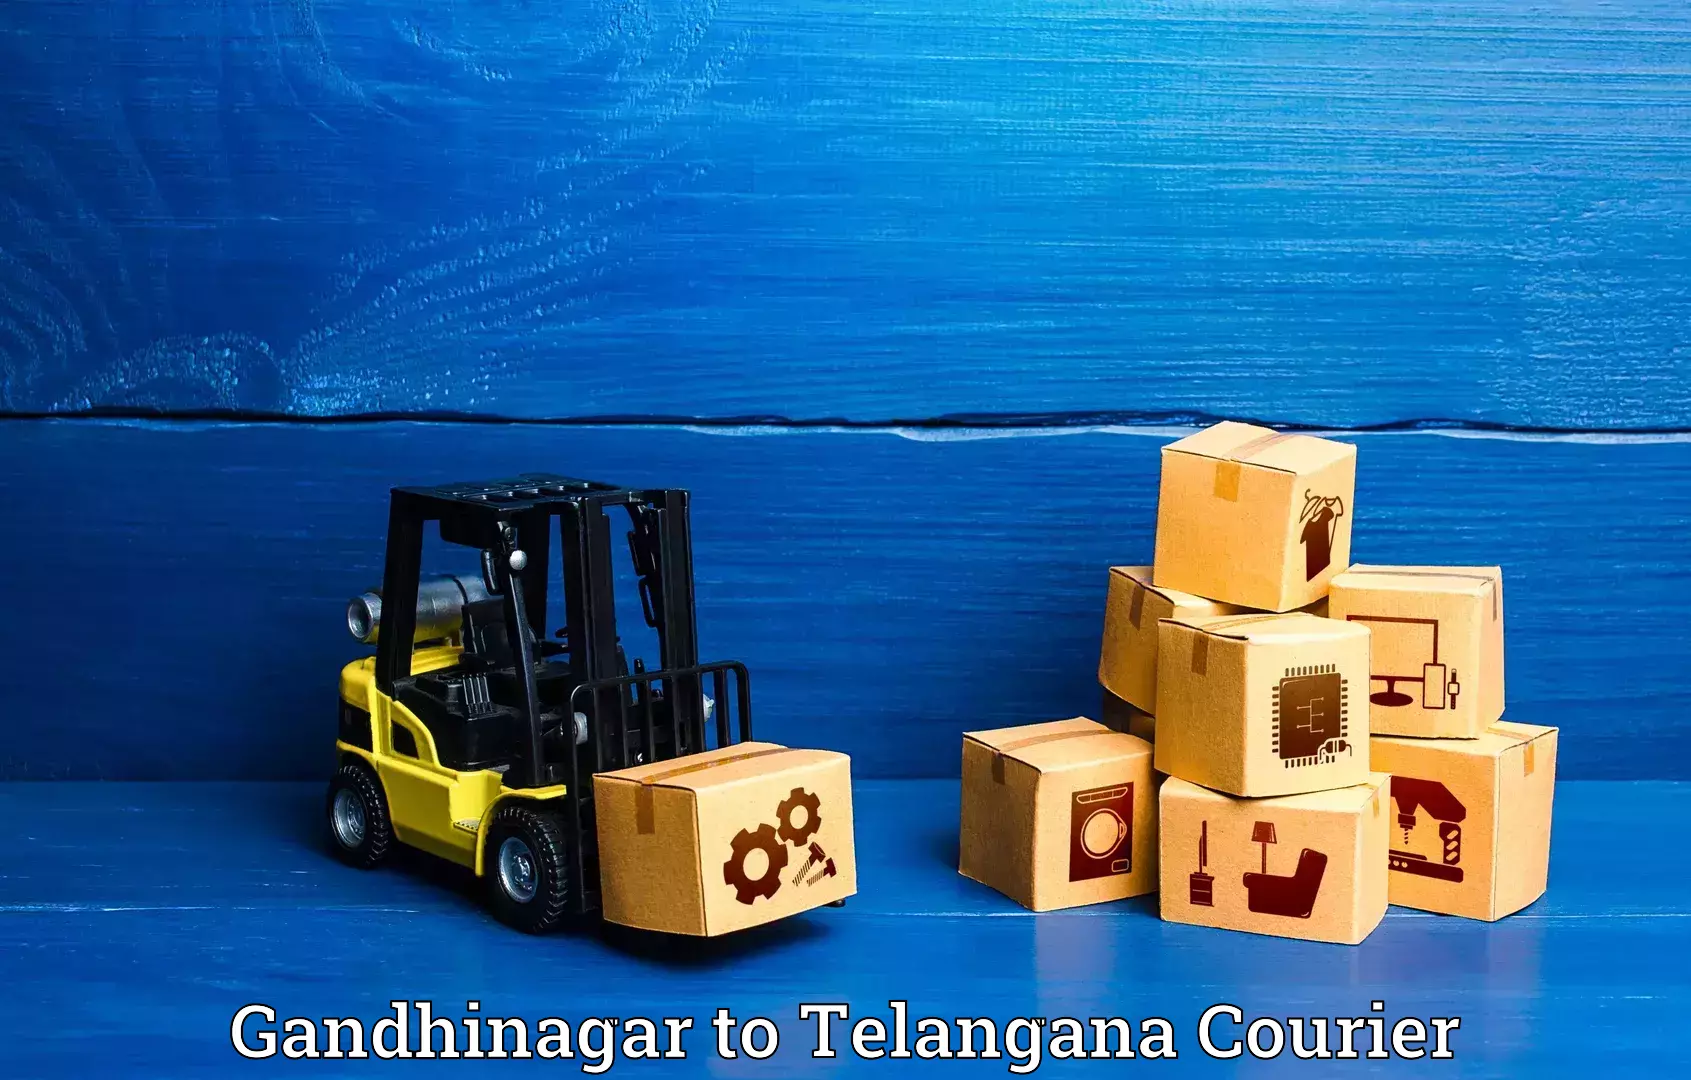 Luggage delivery app Gandhinagar to Secunderabad